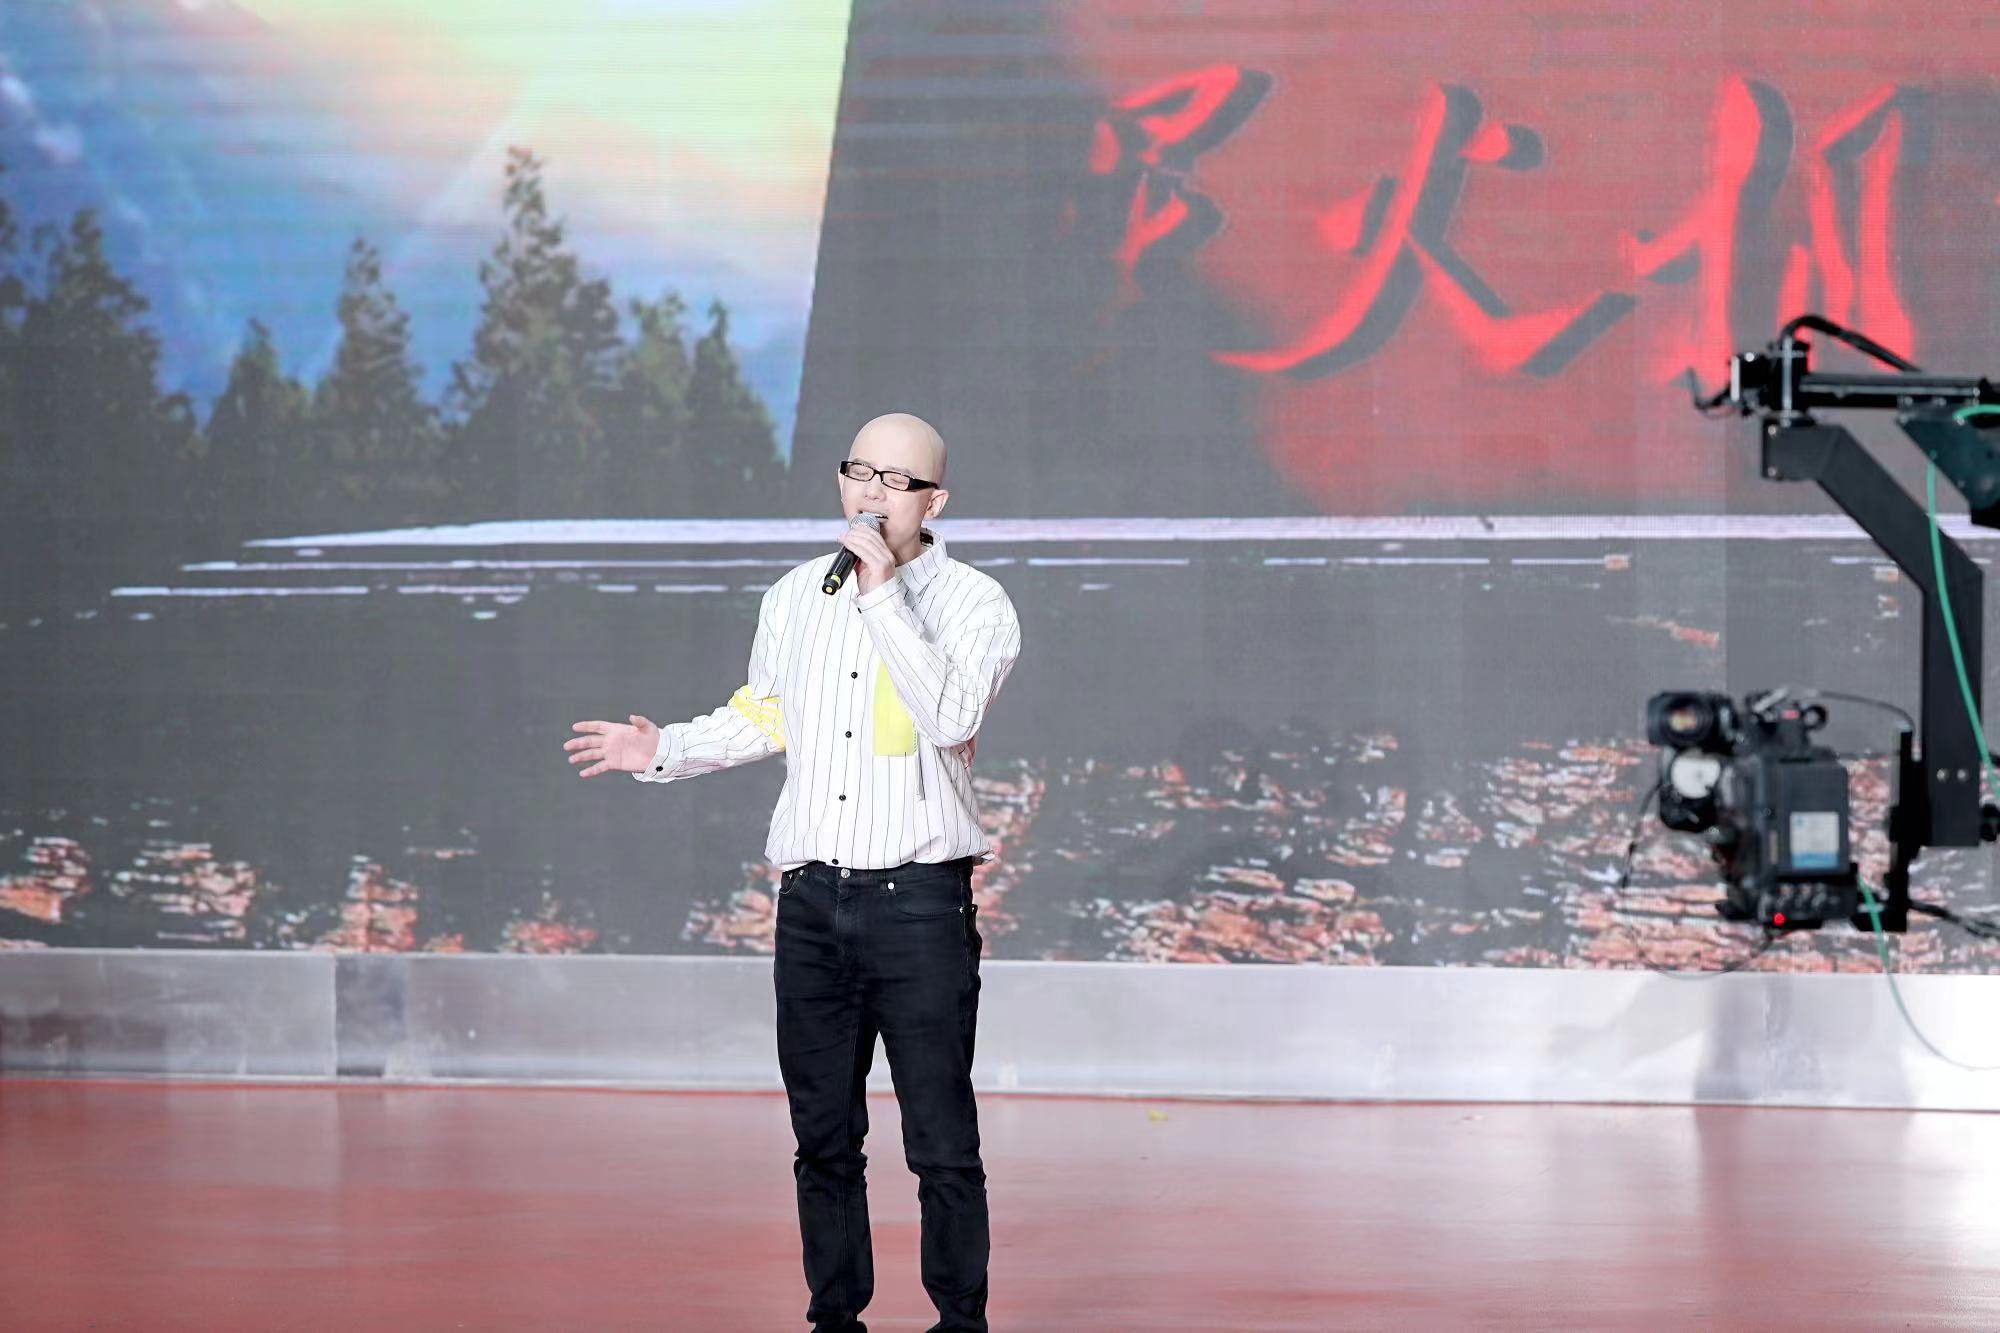 平安亮相泸州市2022年中国农民丰收节 压轴献唱两首歌曲共庆盛会